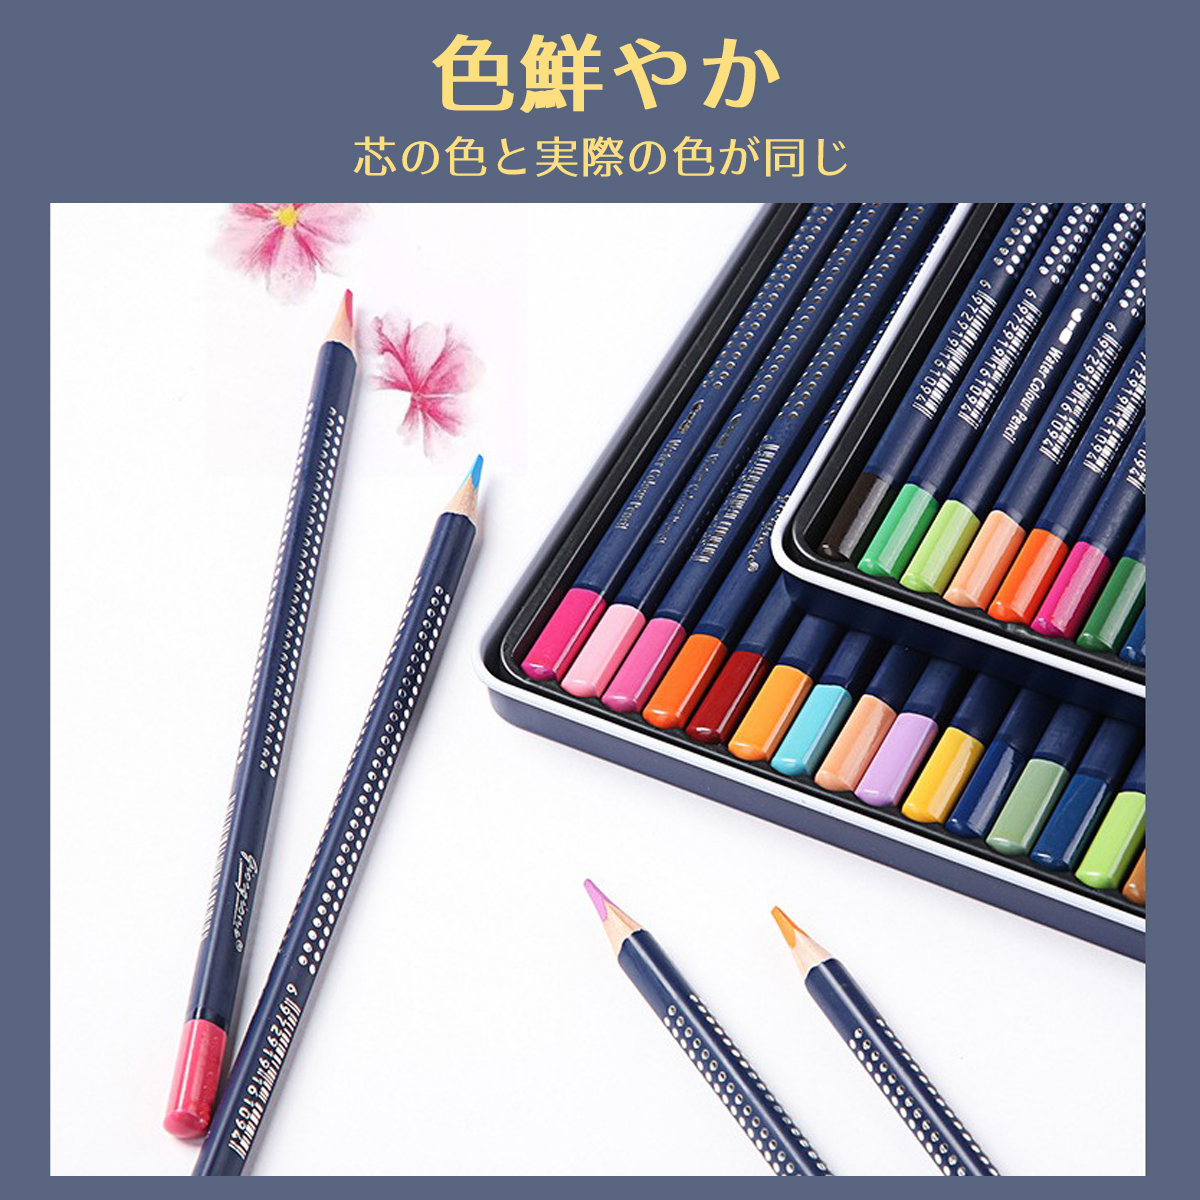 水彩色鉛筆 36色セット ネコポス送料無料 水彩 色鉛筆 色えんぴつ いろえんぴつ セット 大人の塗り絵 ジョルジョーネ  :iroen001:エイセンショップ 通販 